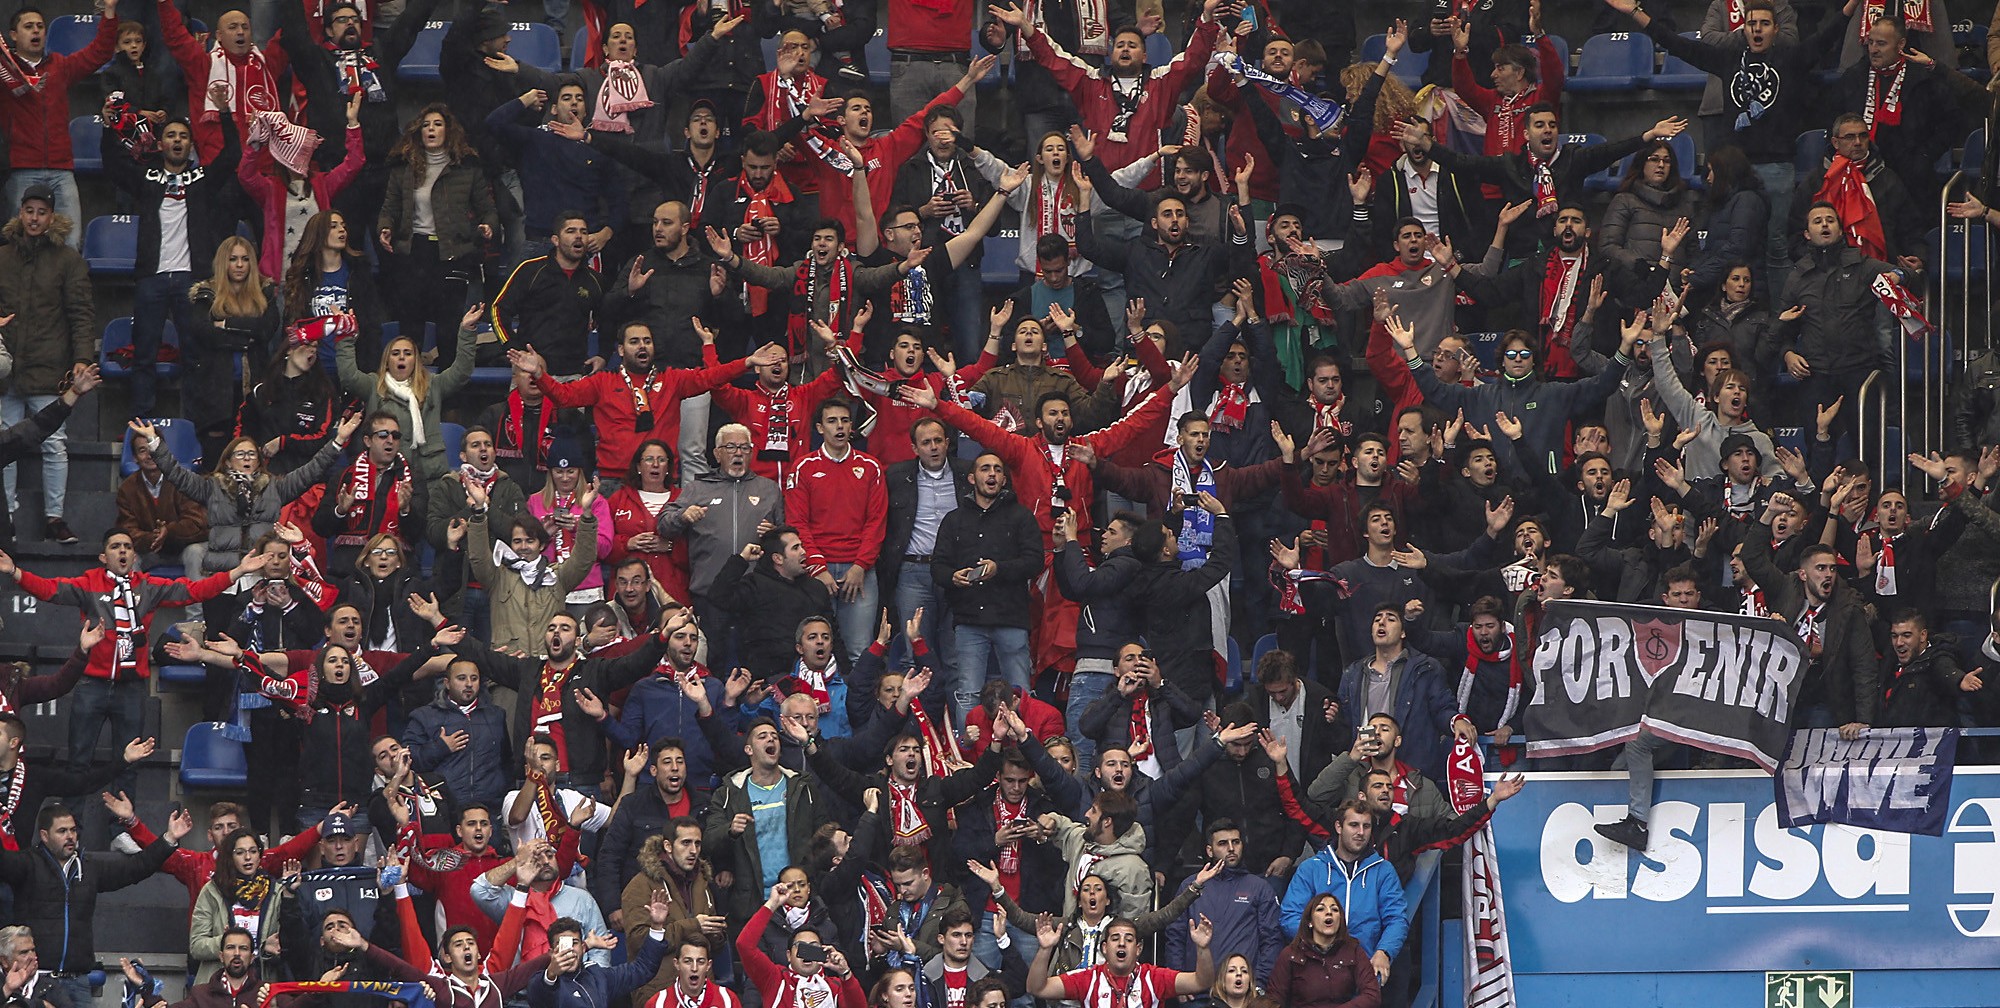 Aficionados del Sevilla FC en Riazor